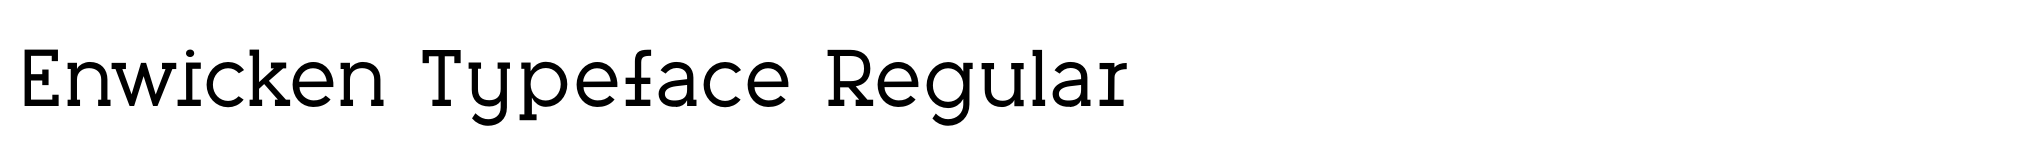 Enwicken Typeface Regular image